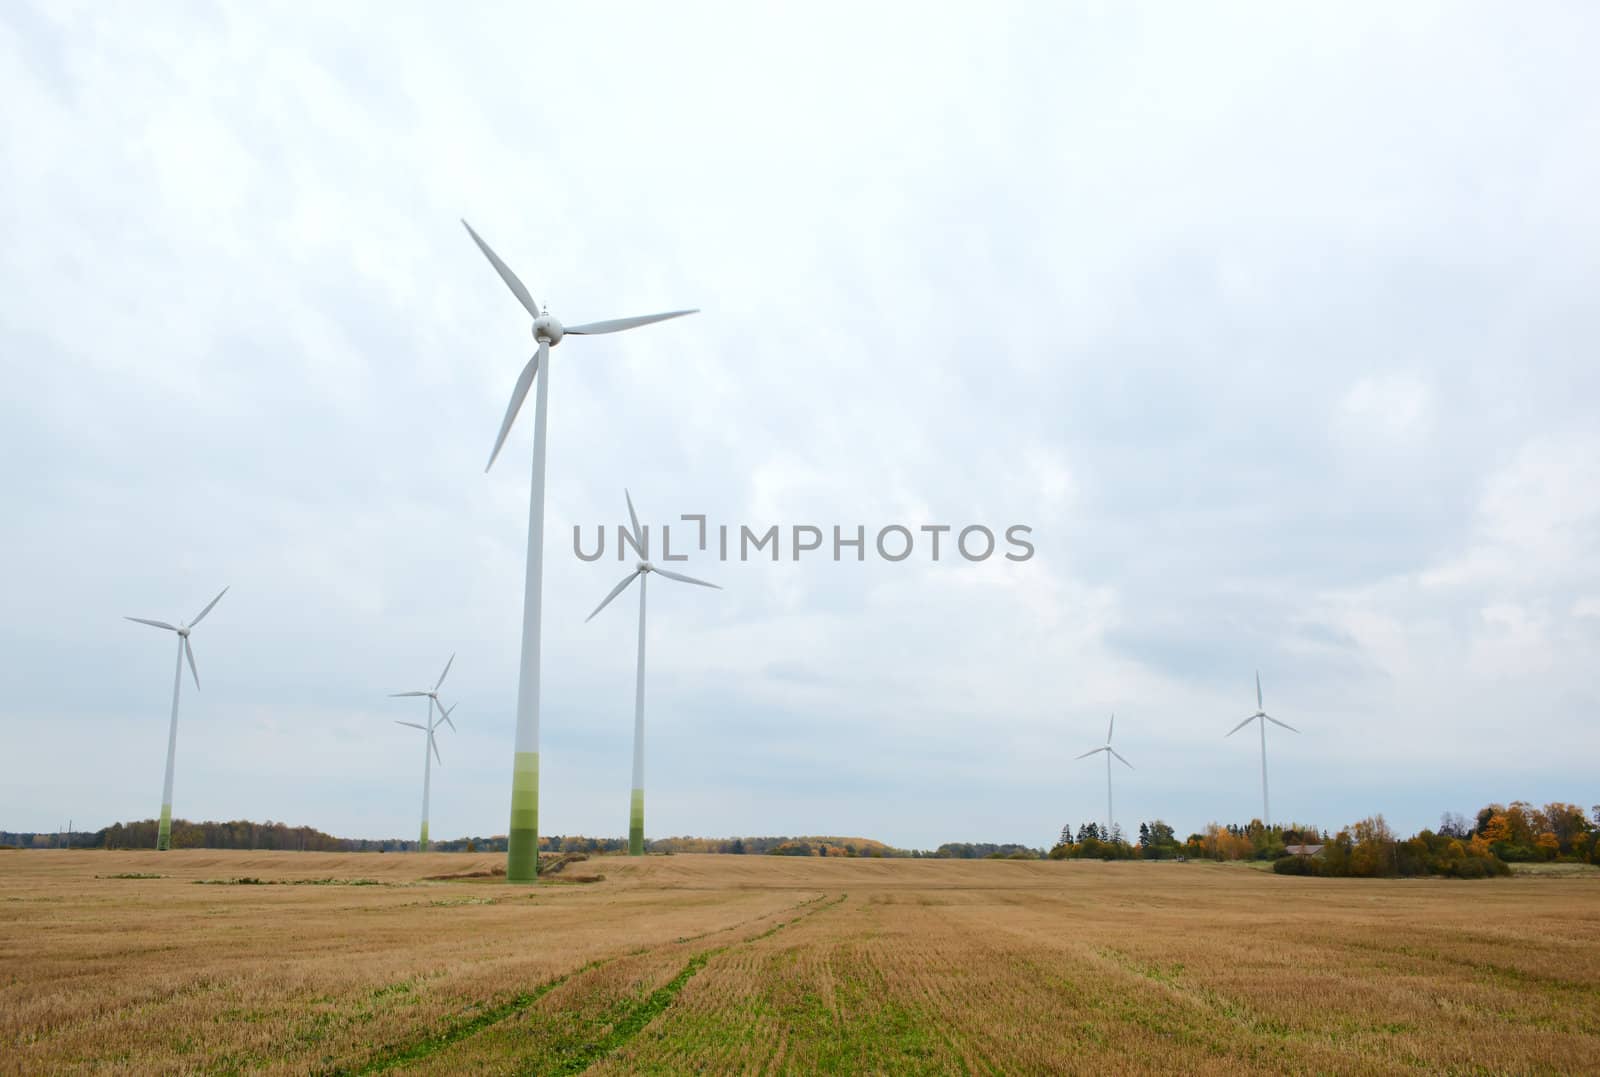 Many wind turbines. Go green!